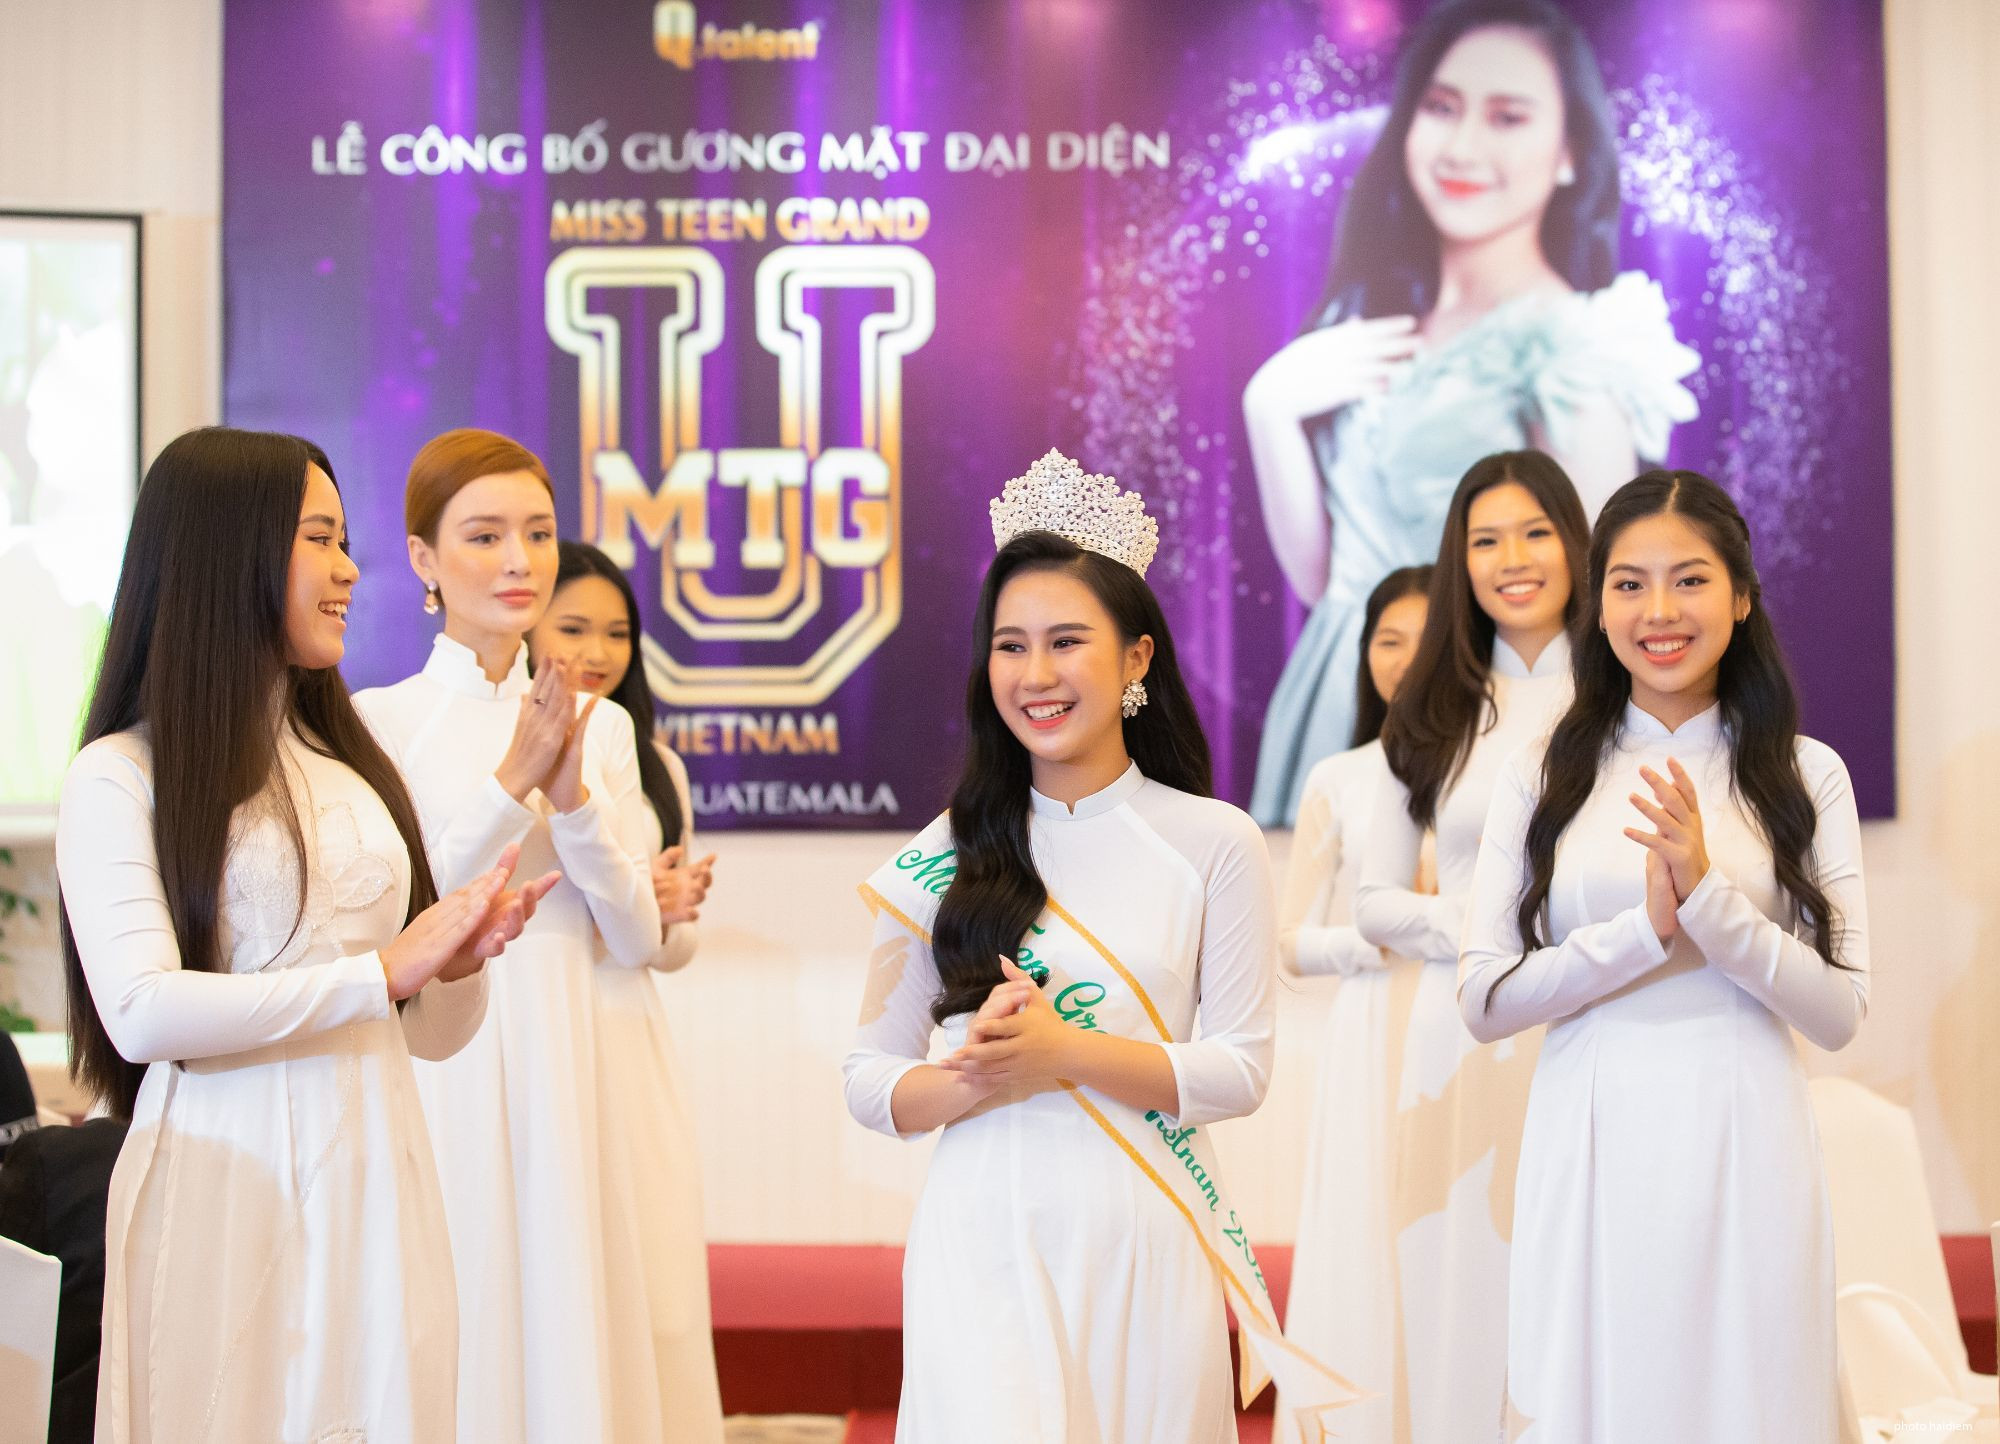 Nguyễn Trang Nguyệt Minh, nữ sinh 14 tuổi, đến từ trường THCS Nguyễn Cao, huyện Quế Võ, tỉnh Bắc Ninh - người đăng quang cuộc thi Miss United Nations Pageants Việt Nam vừa được chọn đại diện Việt Nam tham dự Miss Teen Grand International 2022 được tổ chức tại Guatemala vào tháng 11/2022.